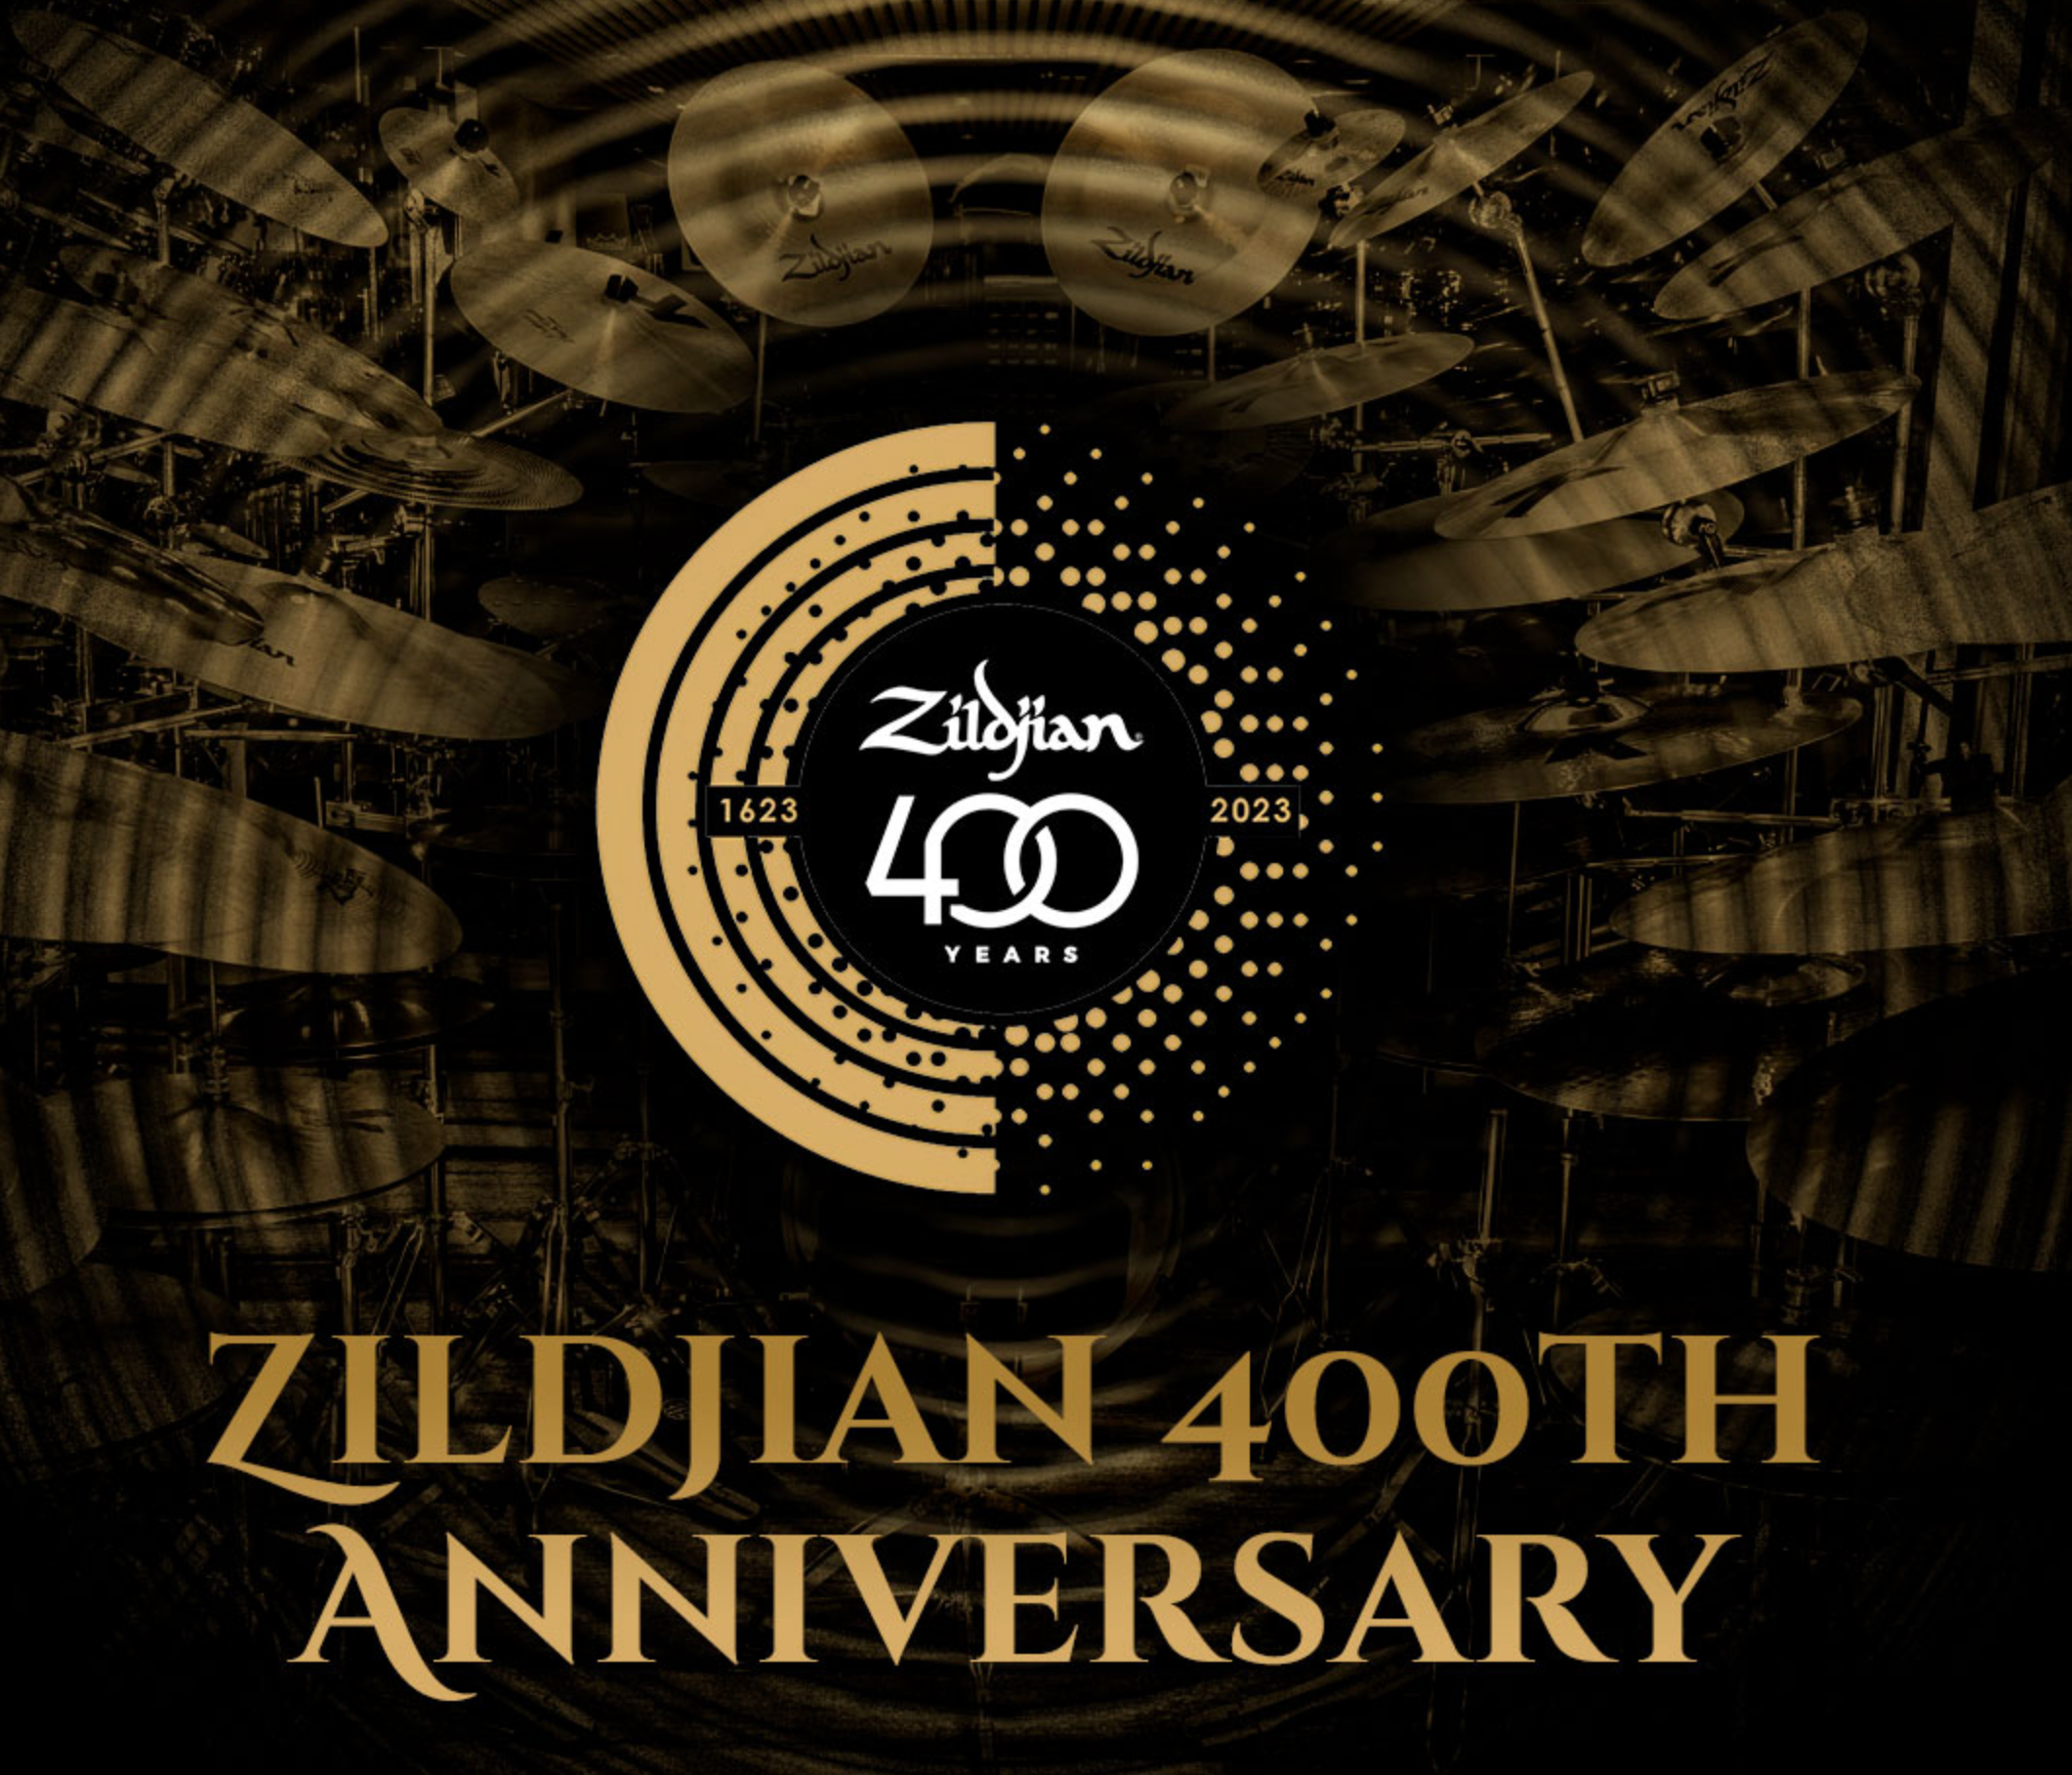 Celebremos junto a Zildjian su Aniversario #400